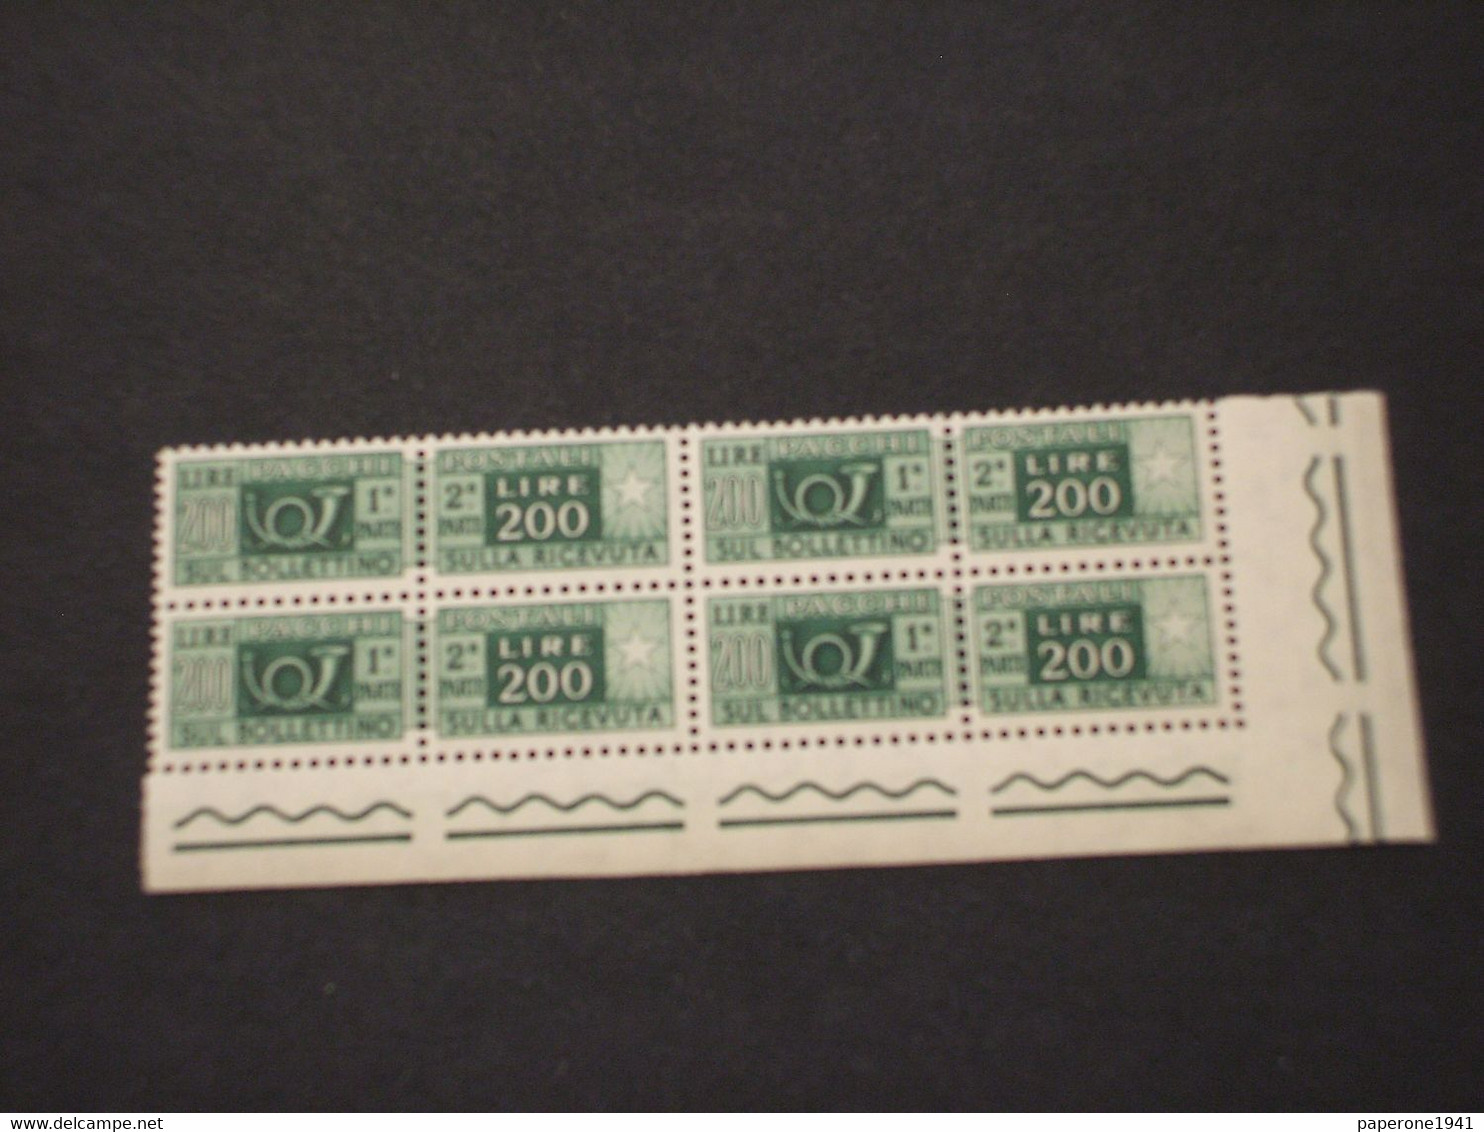 ITALIA  REPUBBLICA - PACCHI POSTALI - 1955 CORNO L. 200, Stelle 4a, In Quartina - NUOVO(++) - Postal Parcels